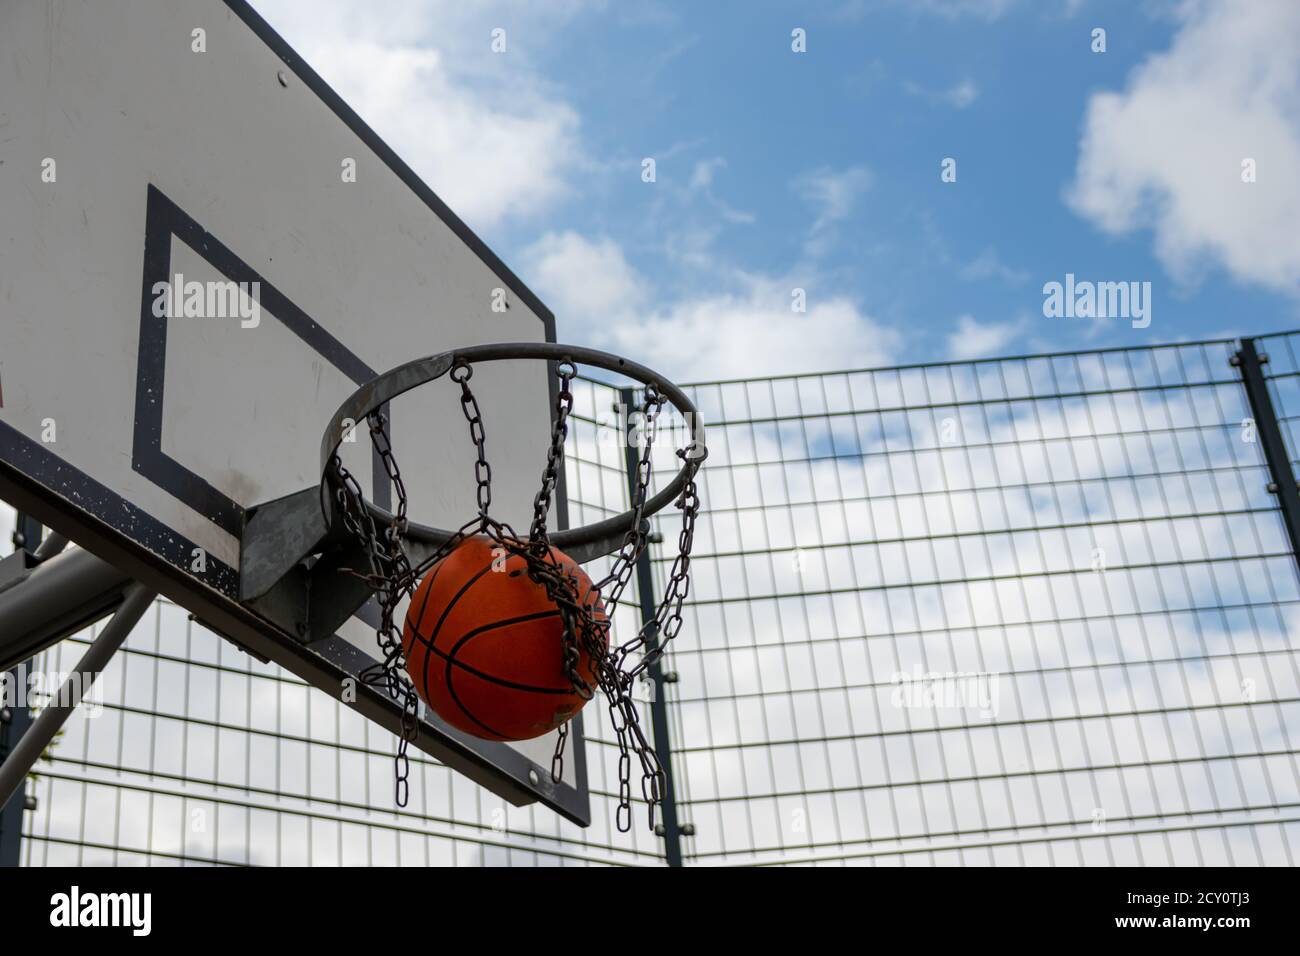 Azione di basket con una palla volante dall'allenamento e. pratica